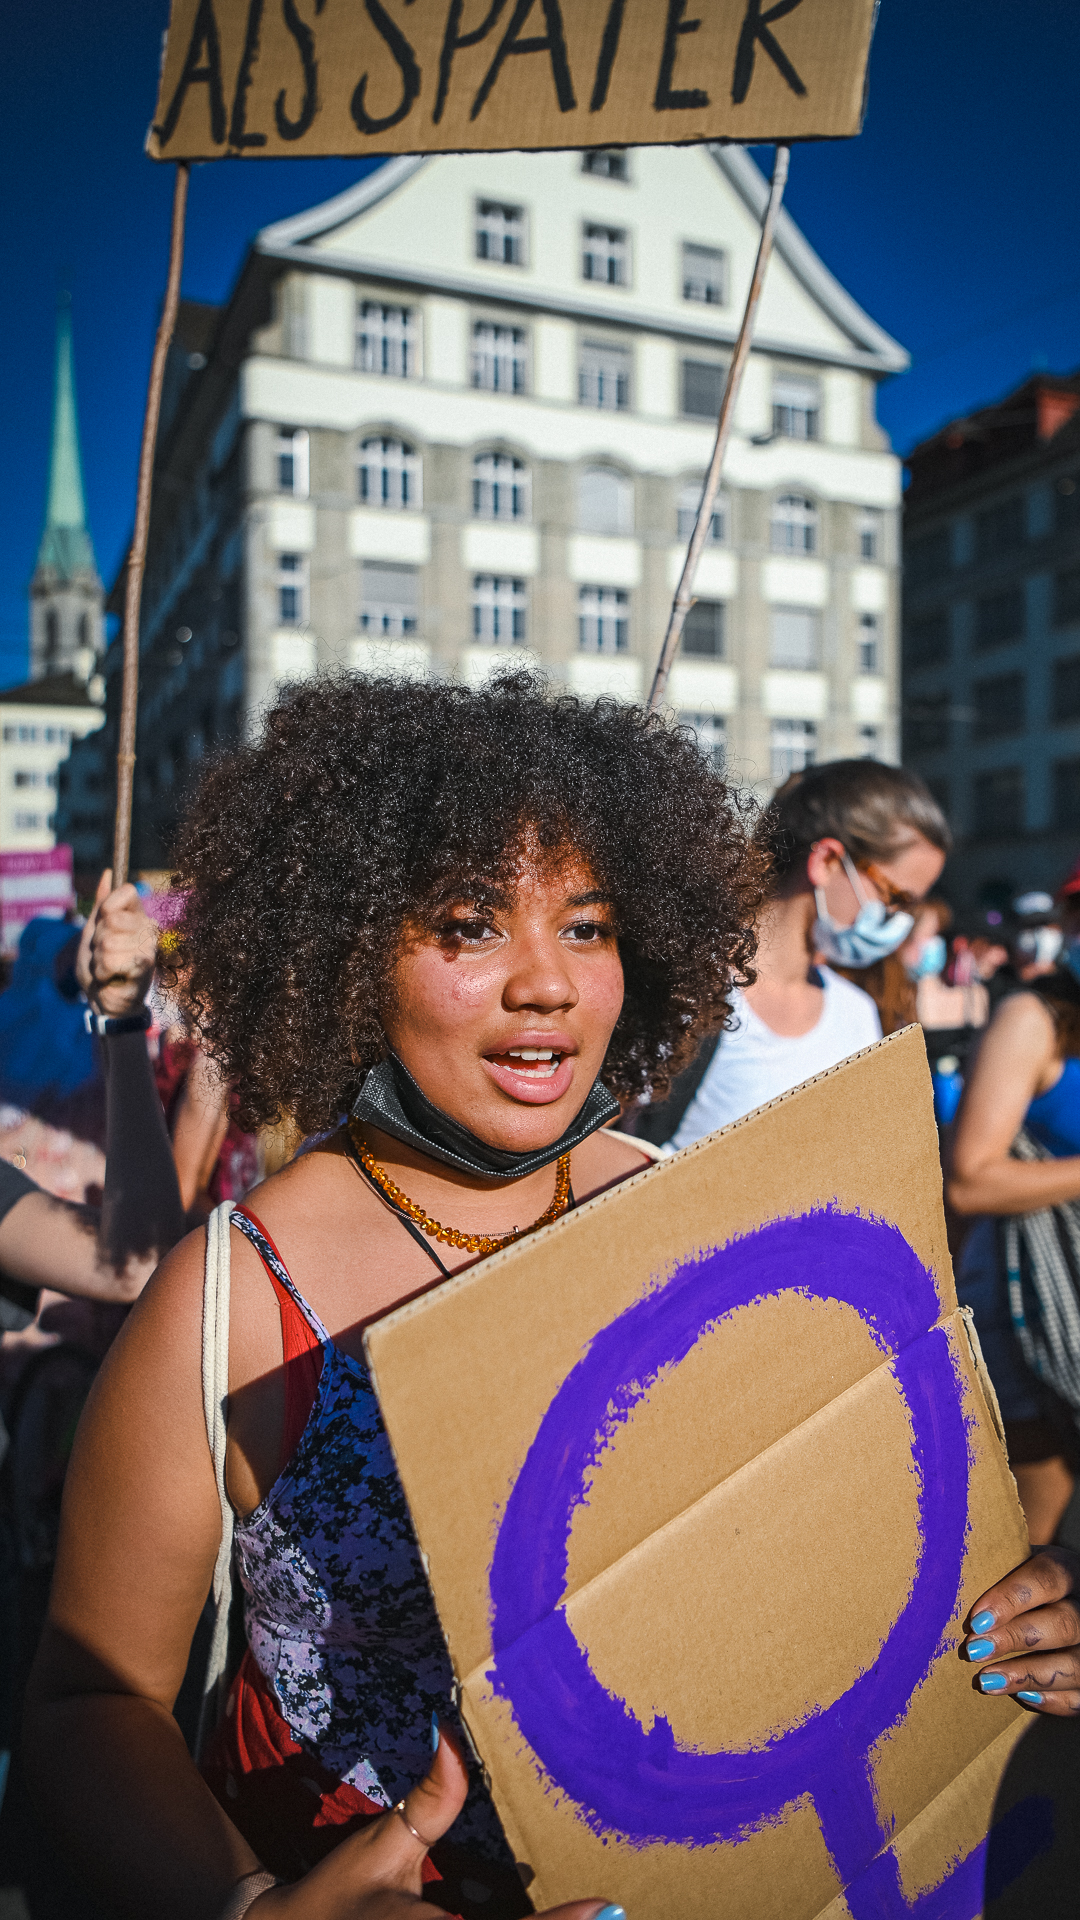 Ein Foto einer Frau mit dunklen Locken, die ein Schild mit dem violetten Venussymbol in den händen hält. Inmitten der Demo am 14. Juni 2021, sie ruft etwas